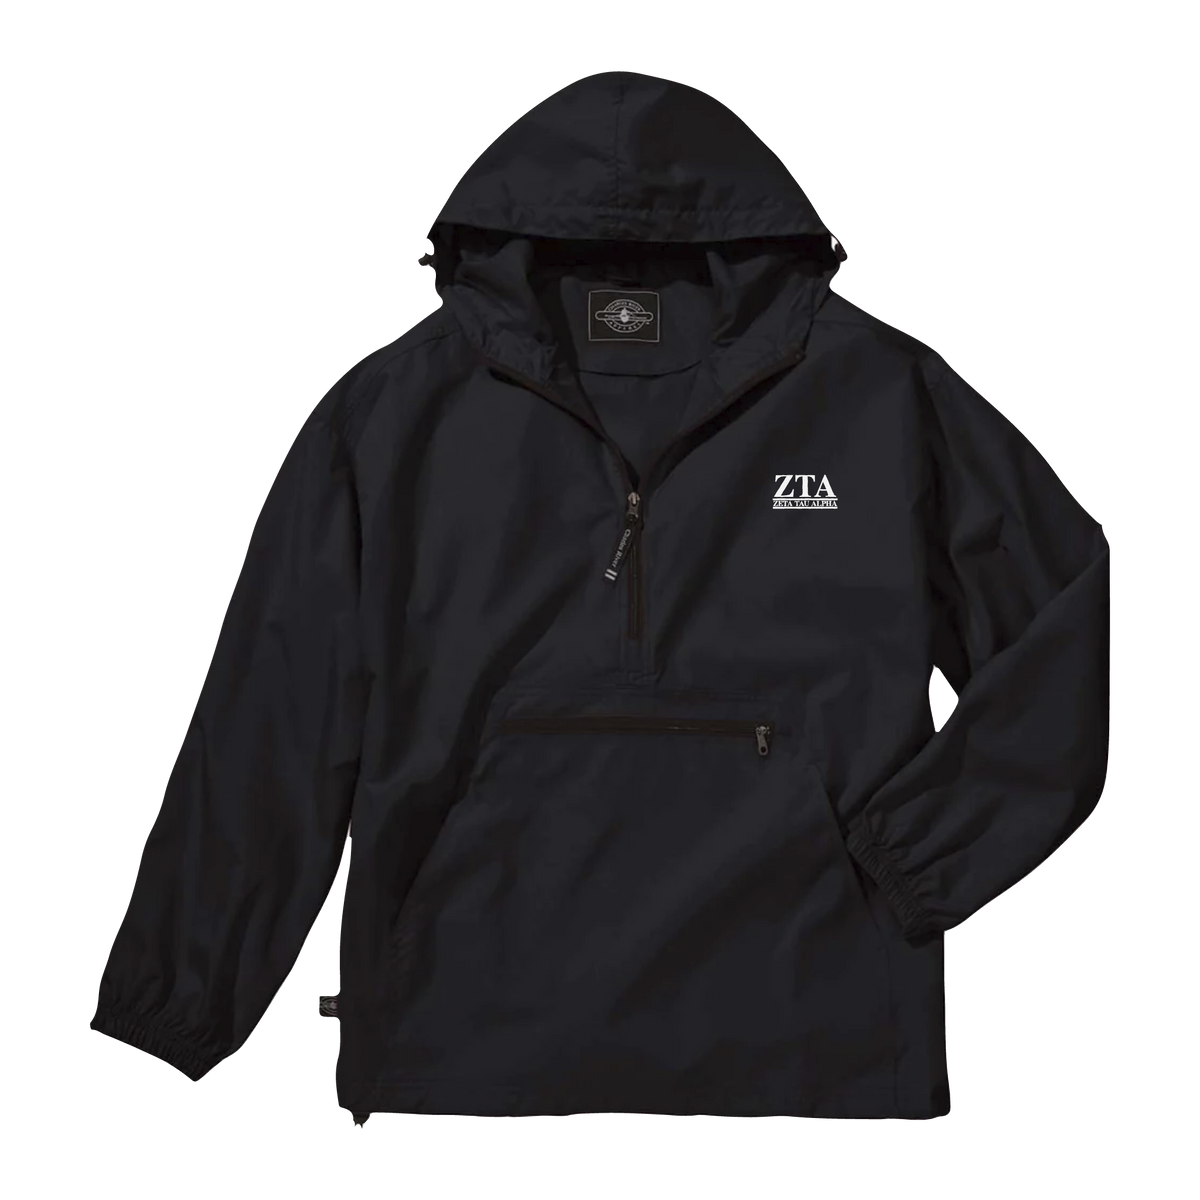 B-Unlimited Greek - Rain Jacket (ZTA) - Charles River - 9905 - Solid Rain Jacket Pullover - Black